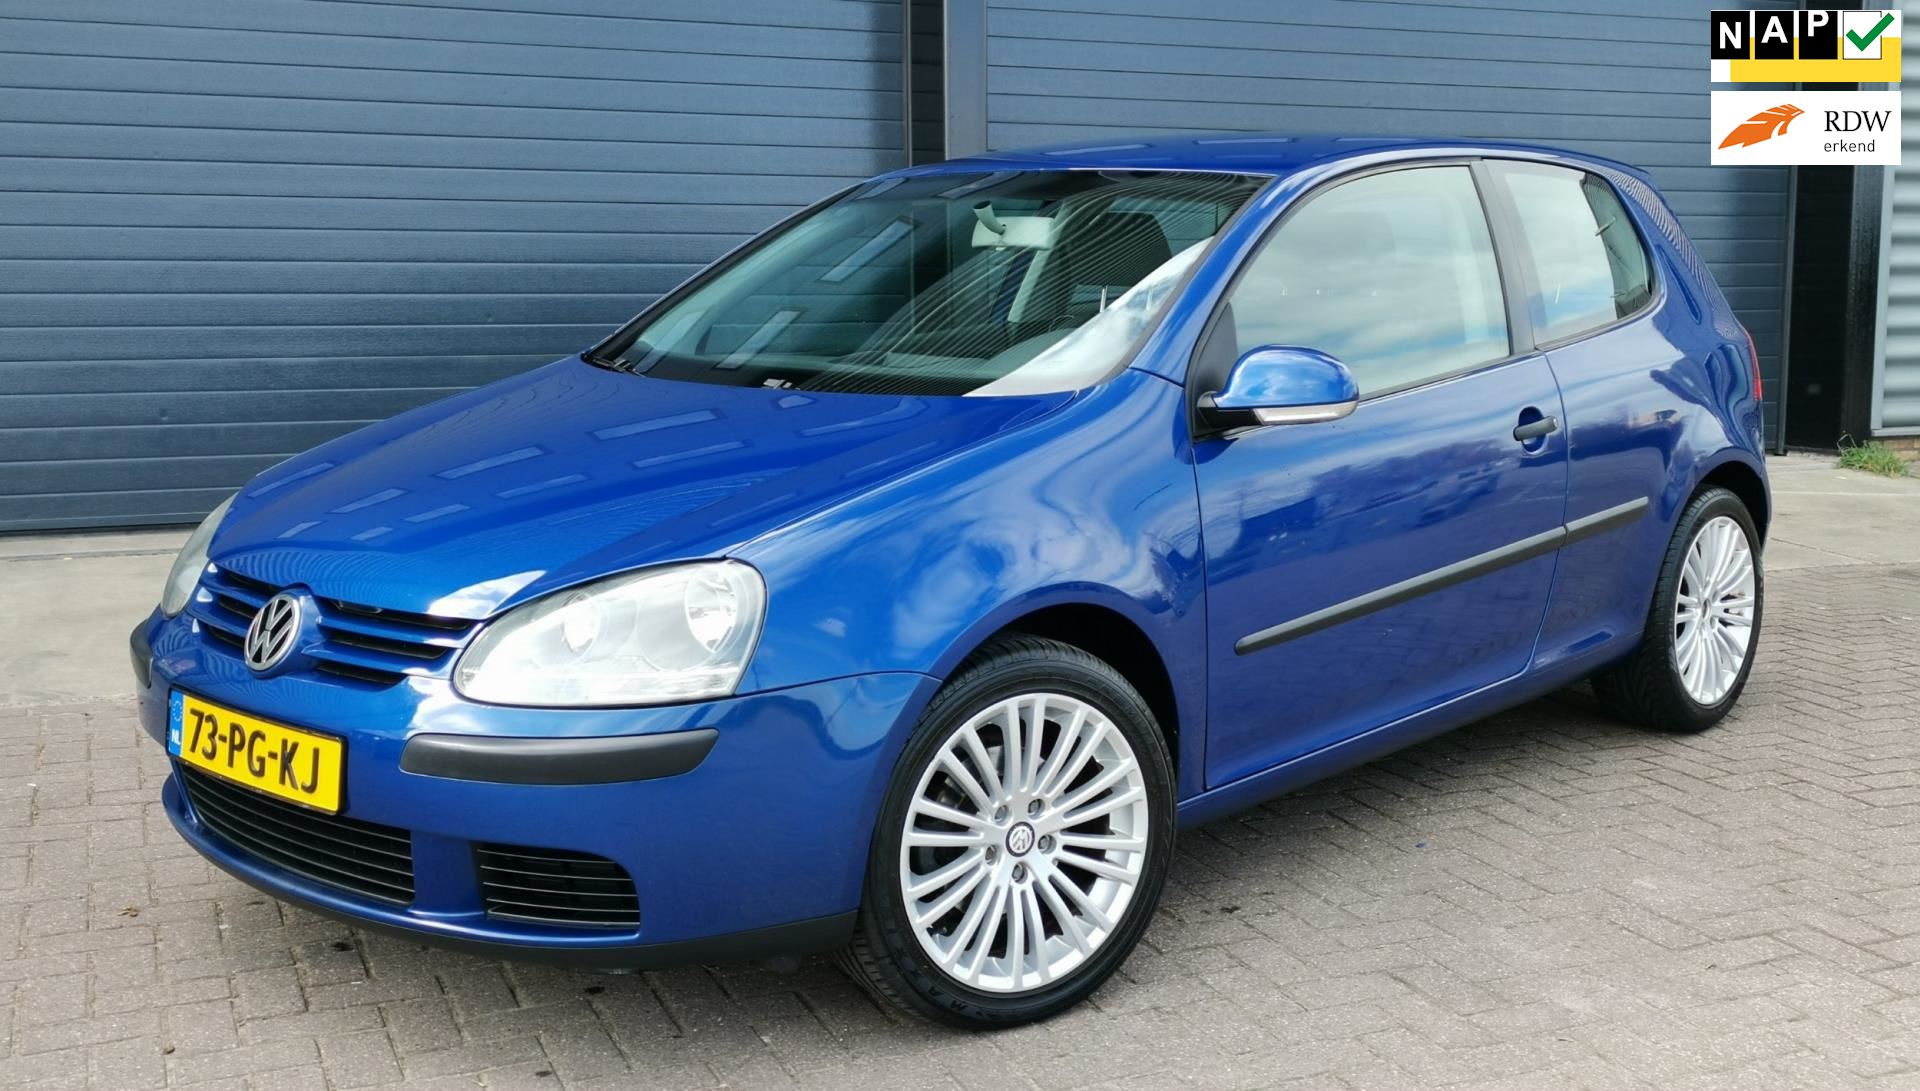 onderwerp Wakker worden mond Volkswagen Golf - 1.4 16V 55KW 3D 2004 Blauw AIRCO*CRUISE*NAP Benzine uit  2004 - www.cartradenass.nl